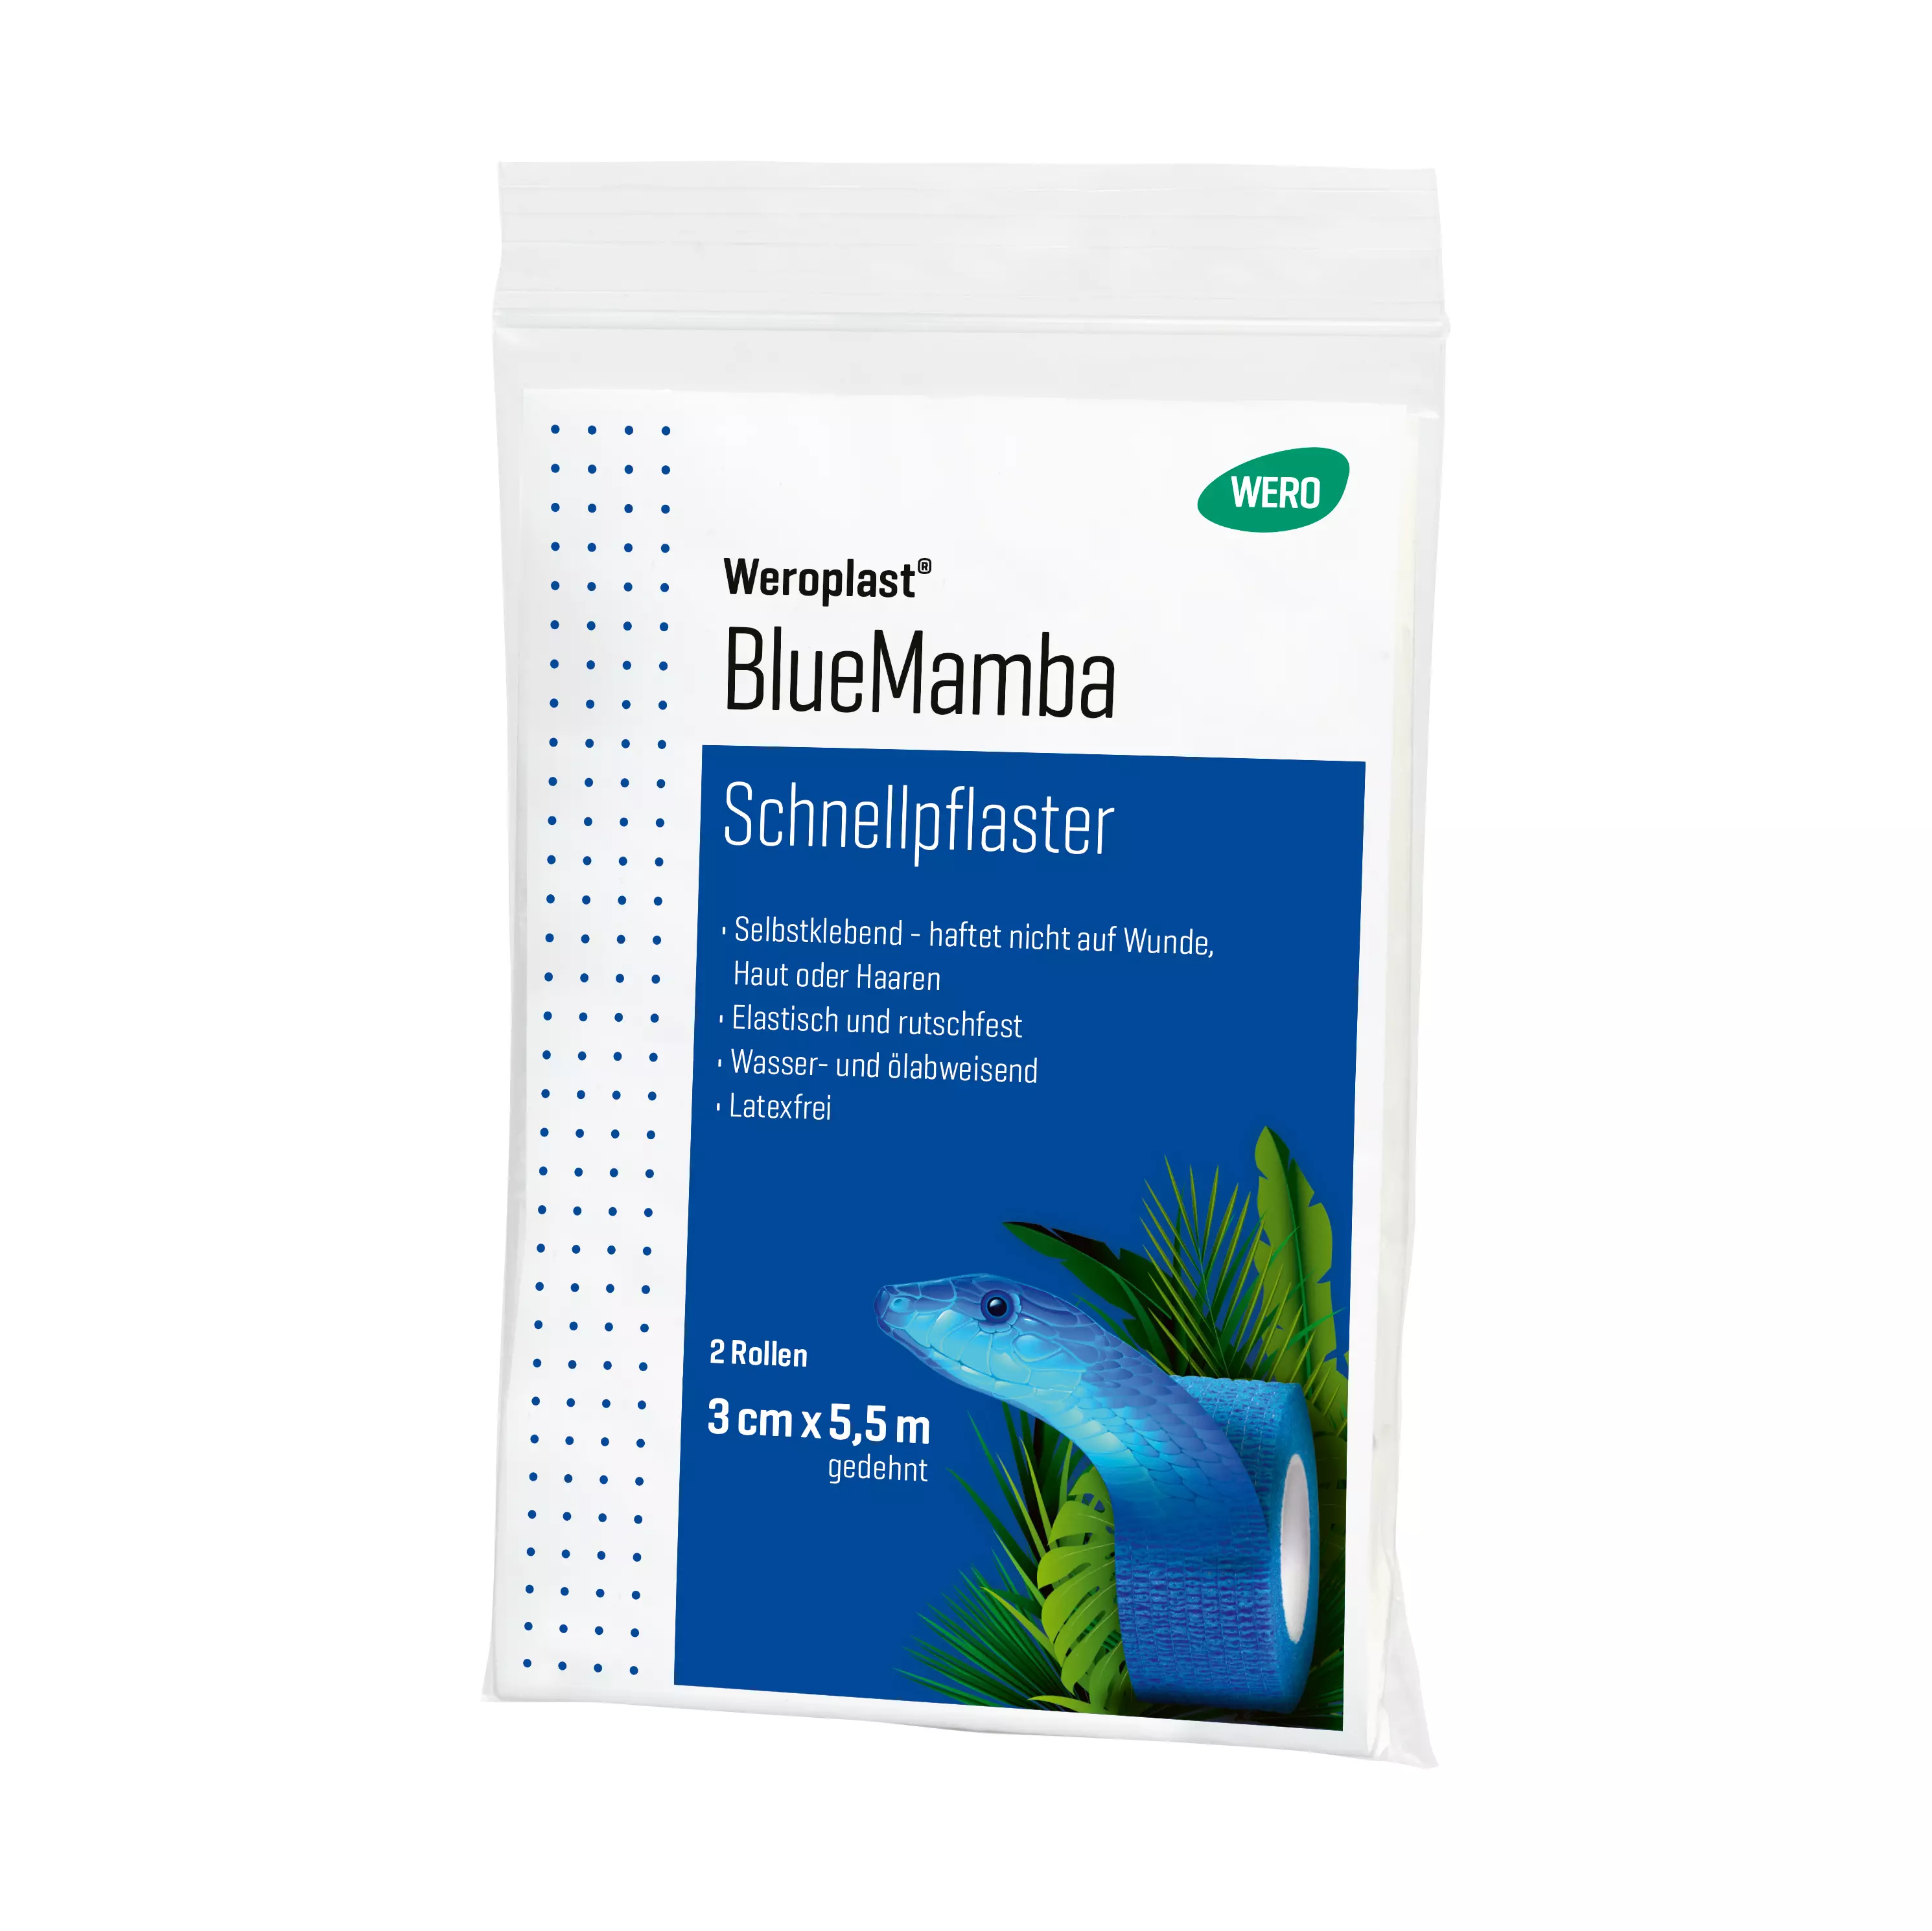 Schnellpflaster Weroplast® BlueMamba - 1 Stk